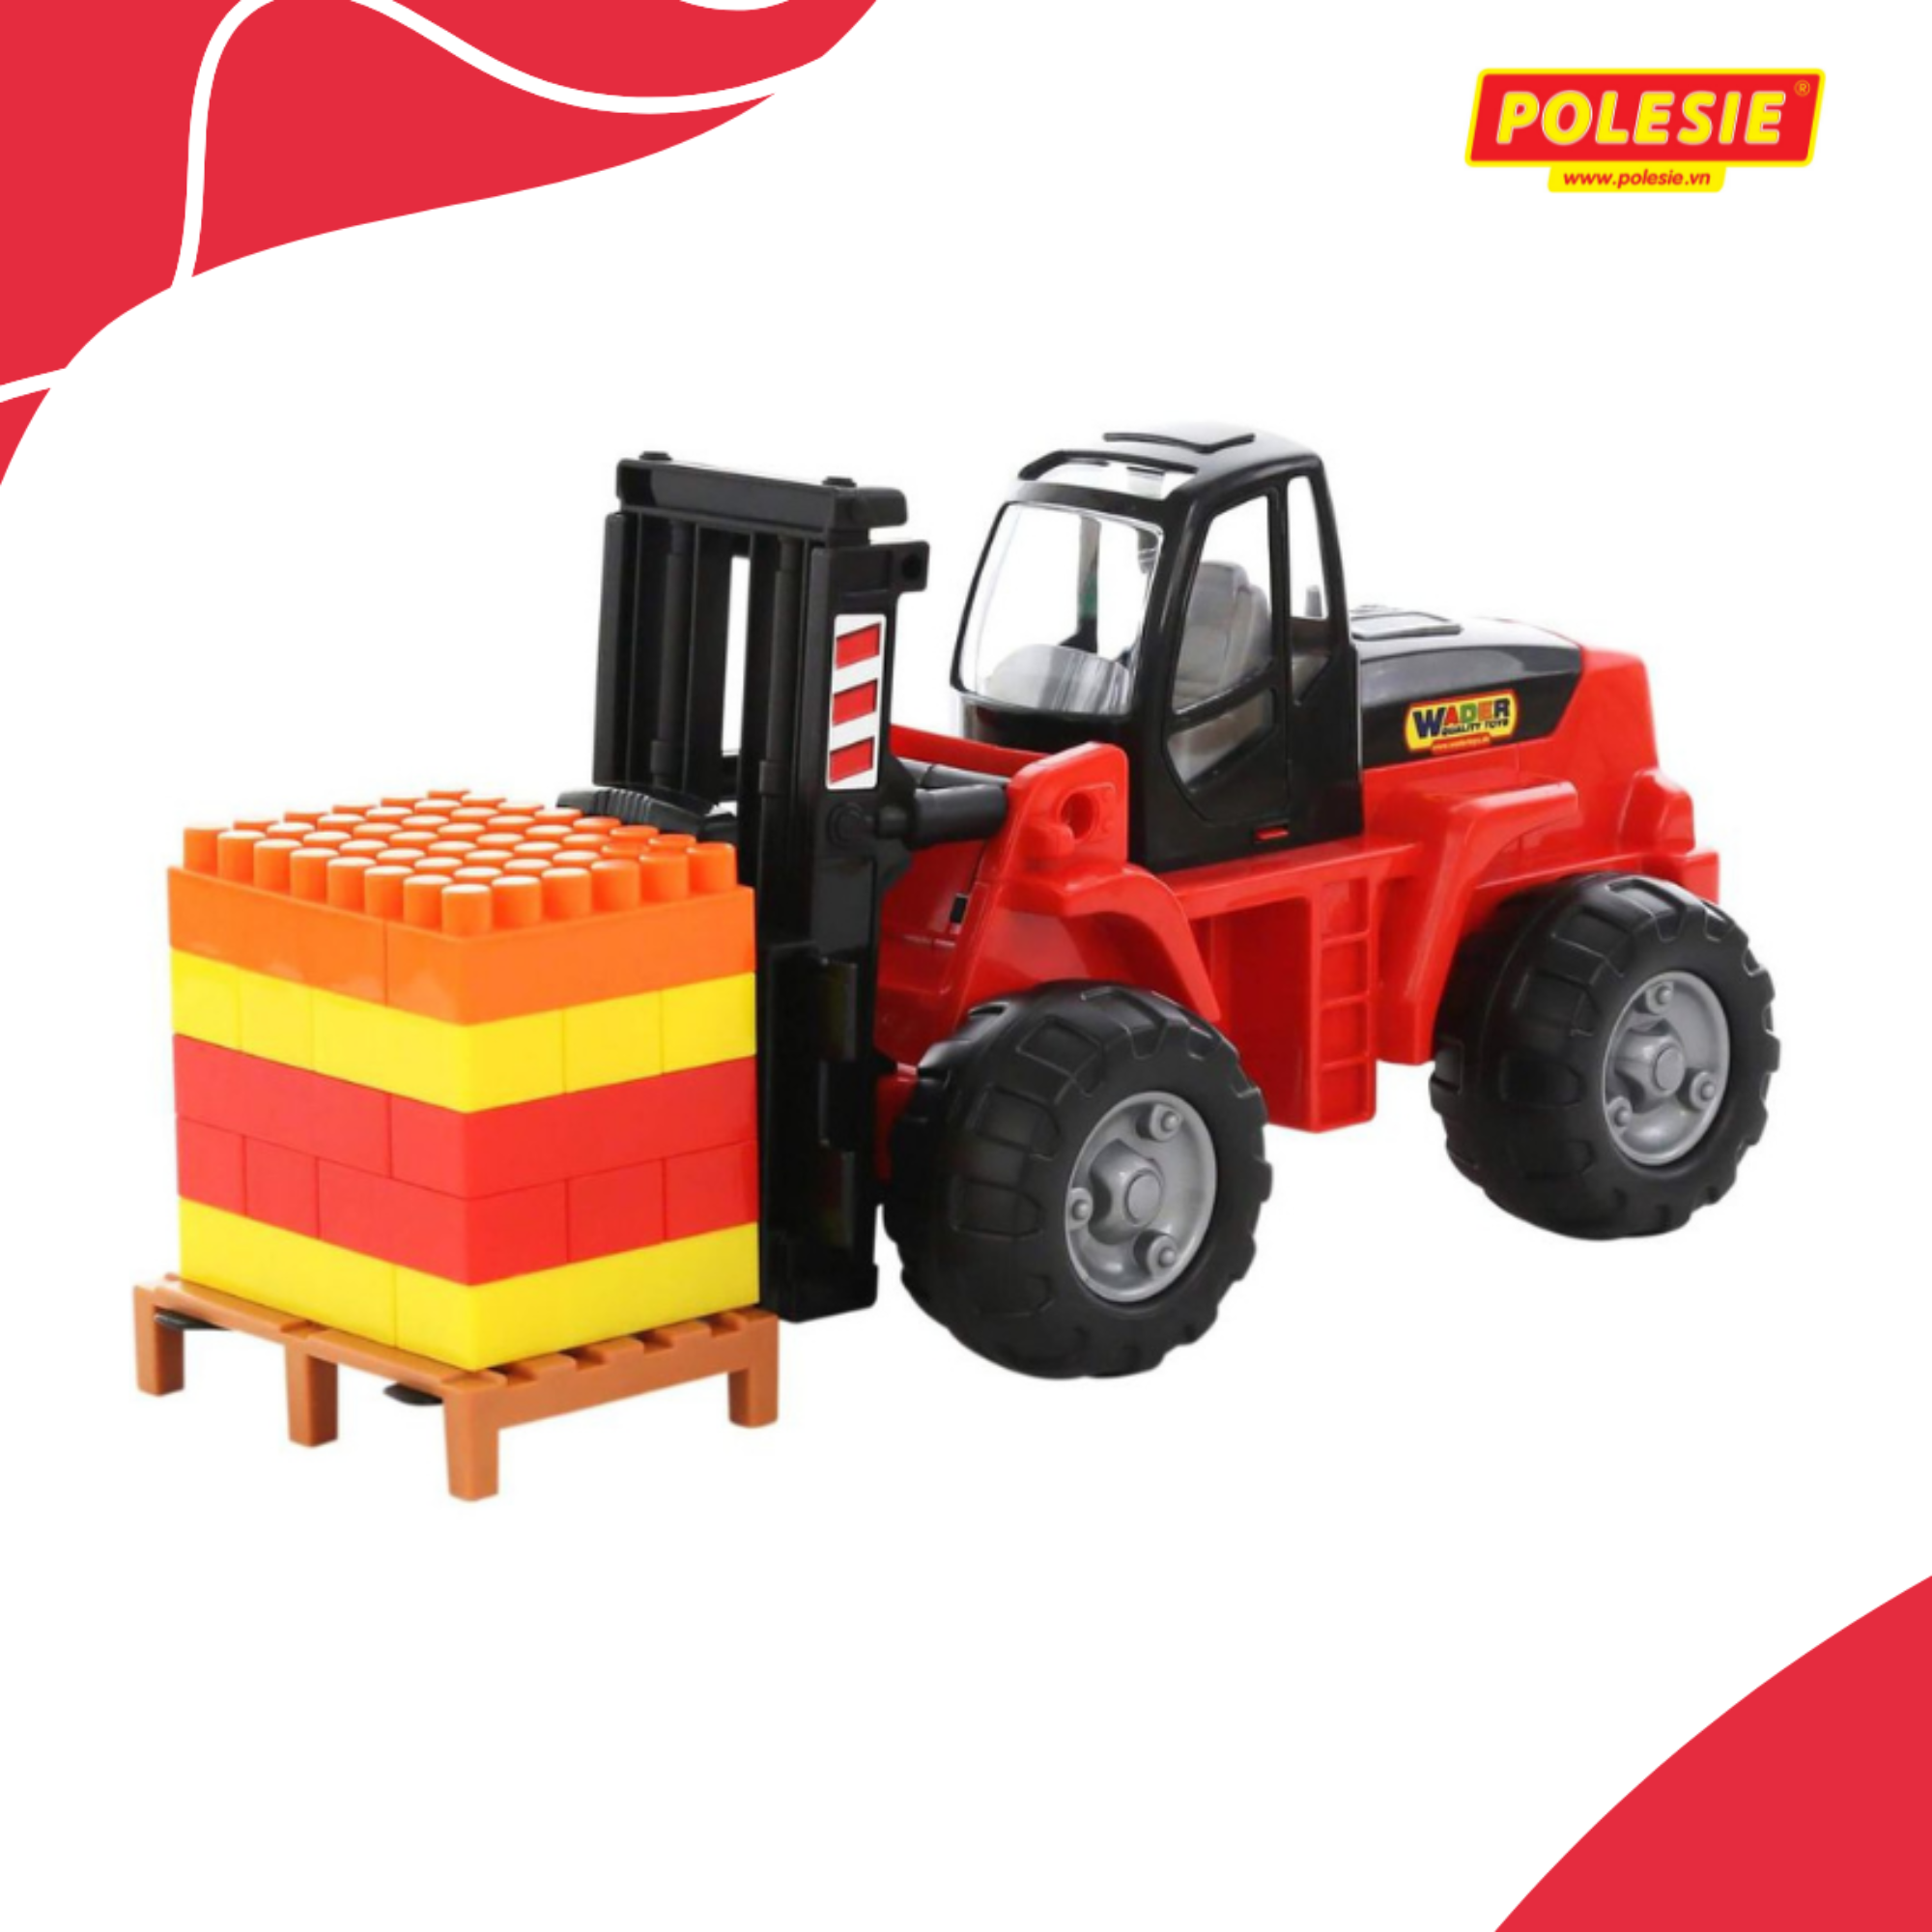 Xe nâng hàng đồ chơi PowerTruck kèm bộ xếp hình – Polesie Toys